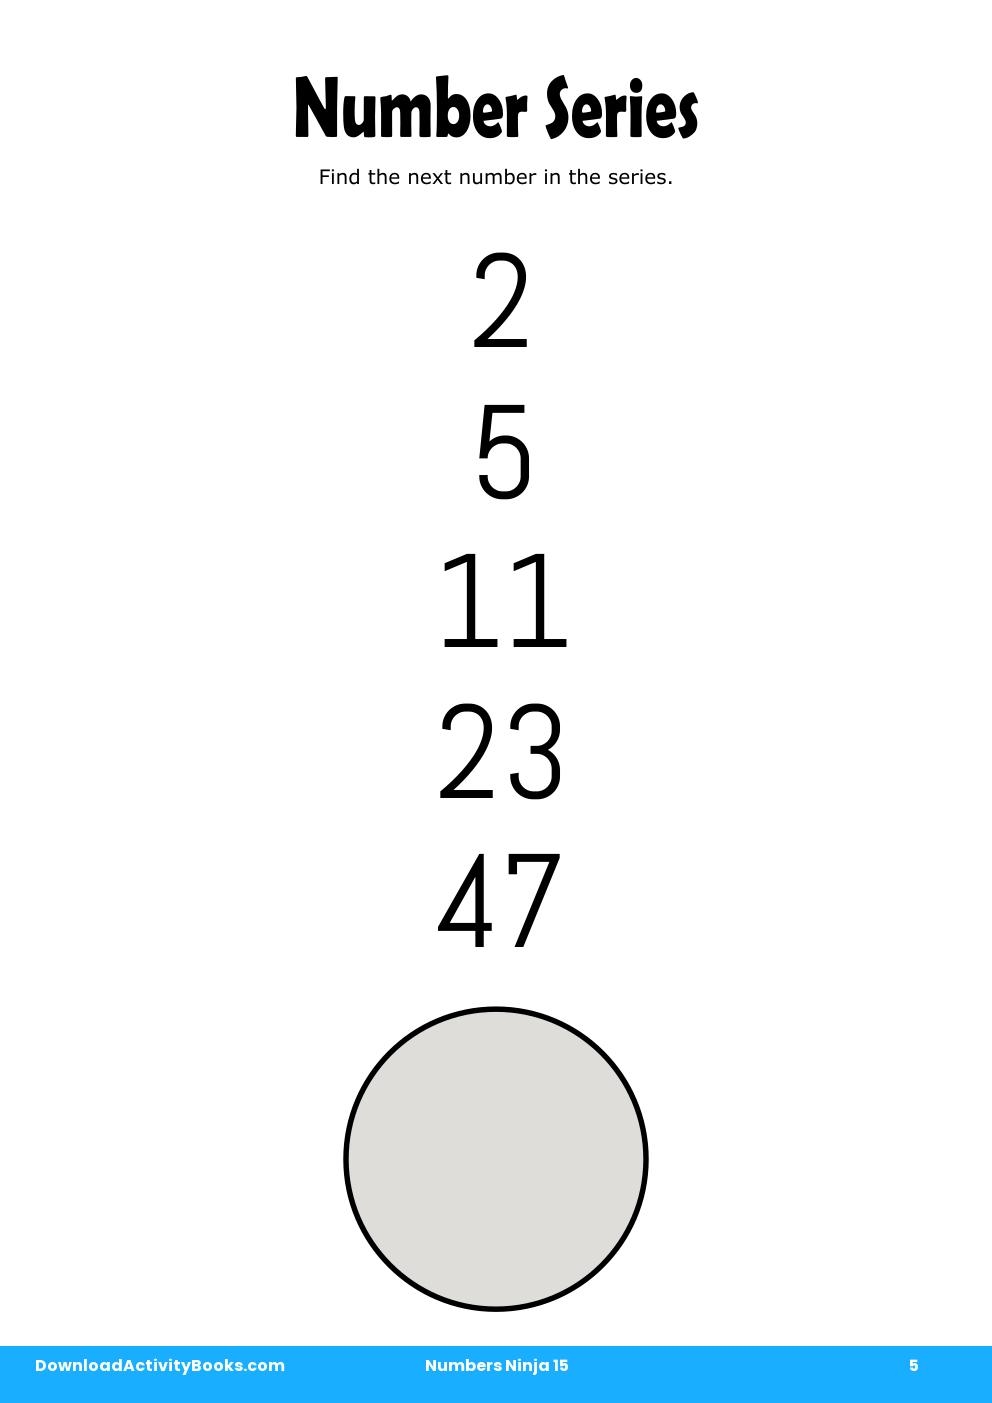 Number Series in Numbers Ninja 15